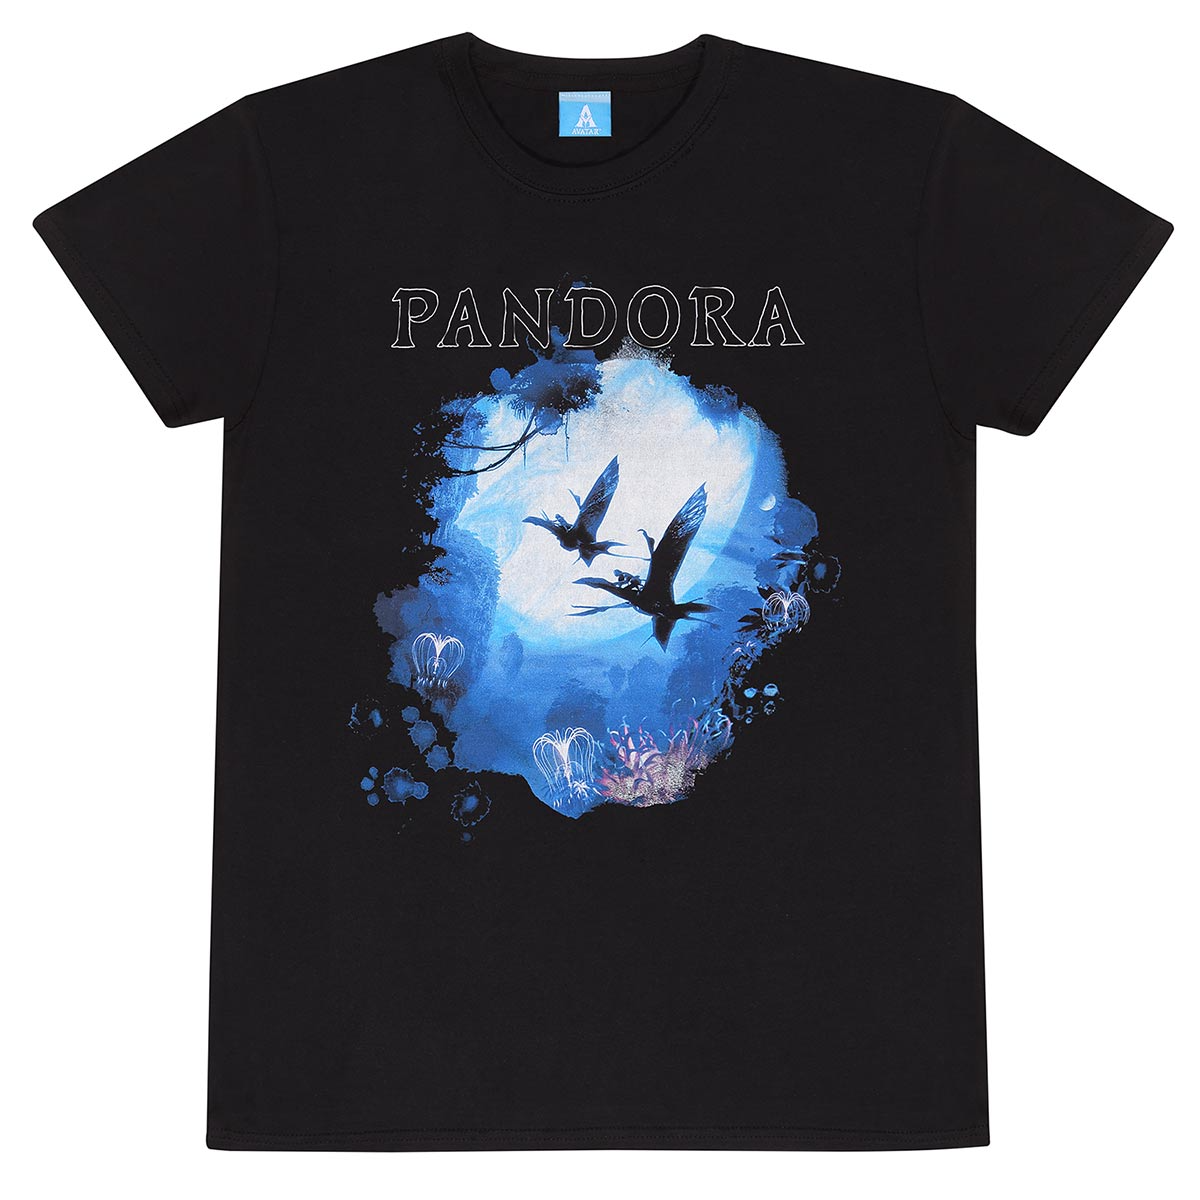 Avatar 2 Pandora T-Shirt